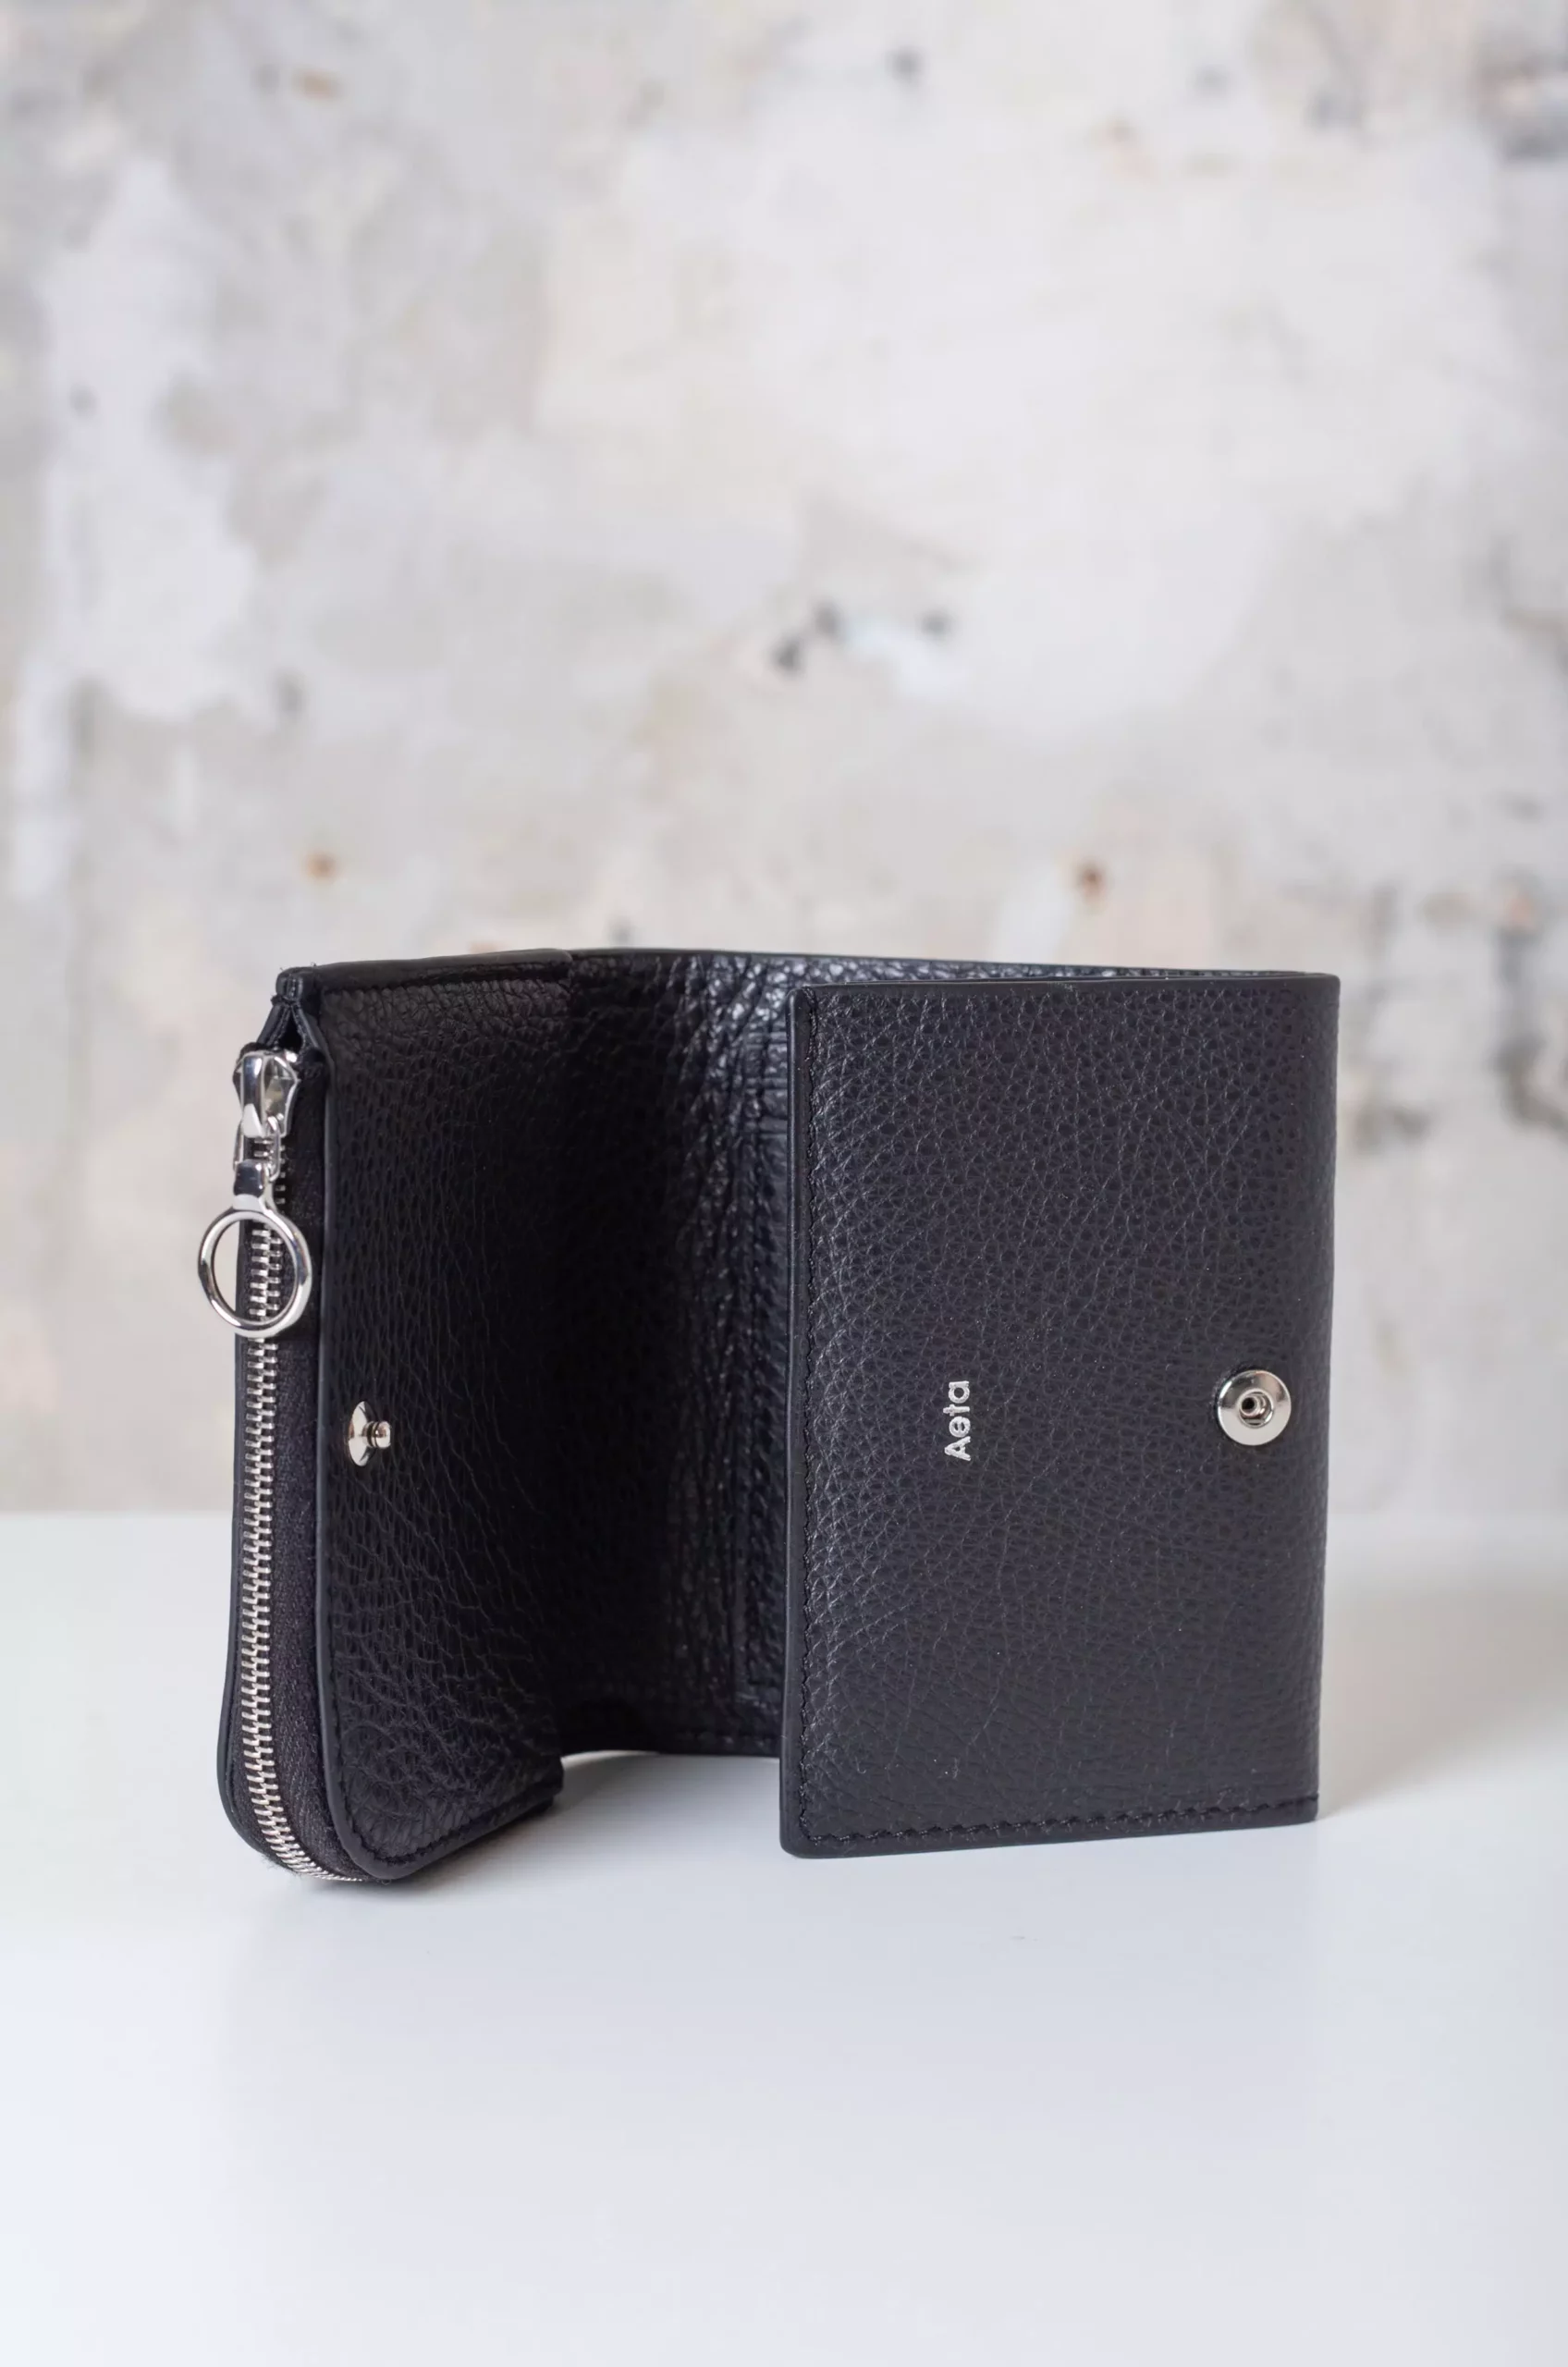 Aeta - Wallet Type A PG15 - Black